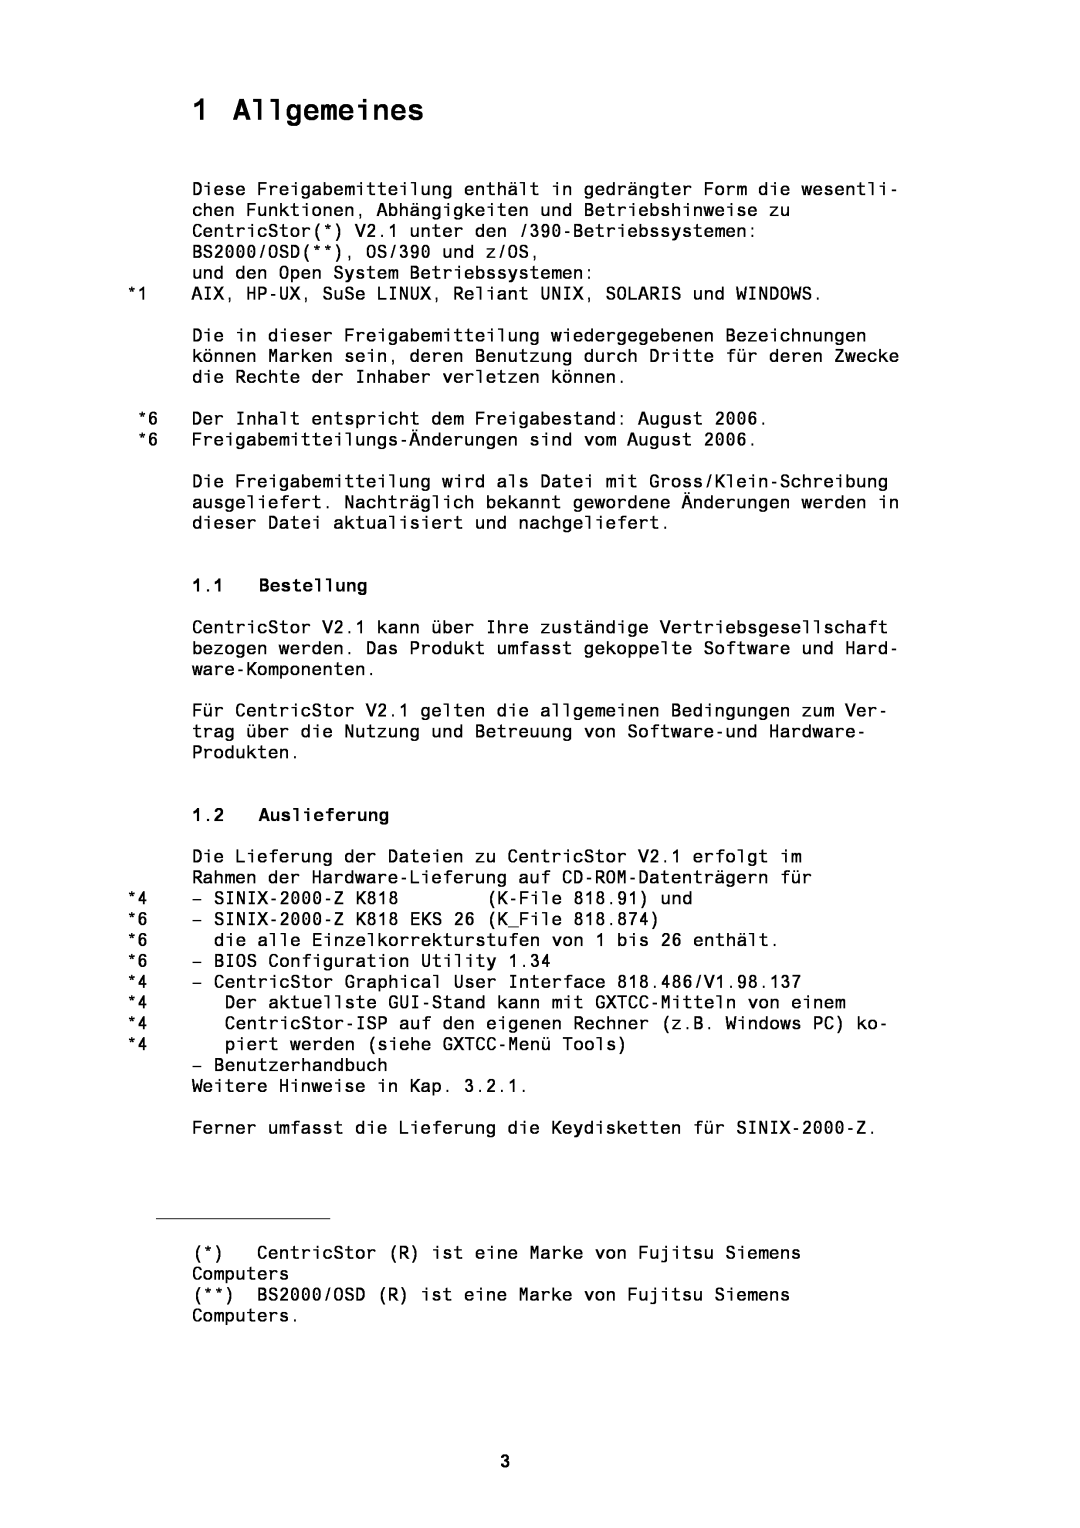 Fujitsu BS2000/OSD manual Allgemeines, Bestellung, Auslieferung 